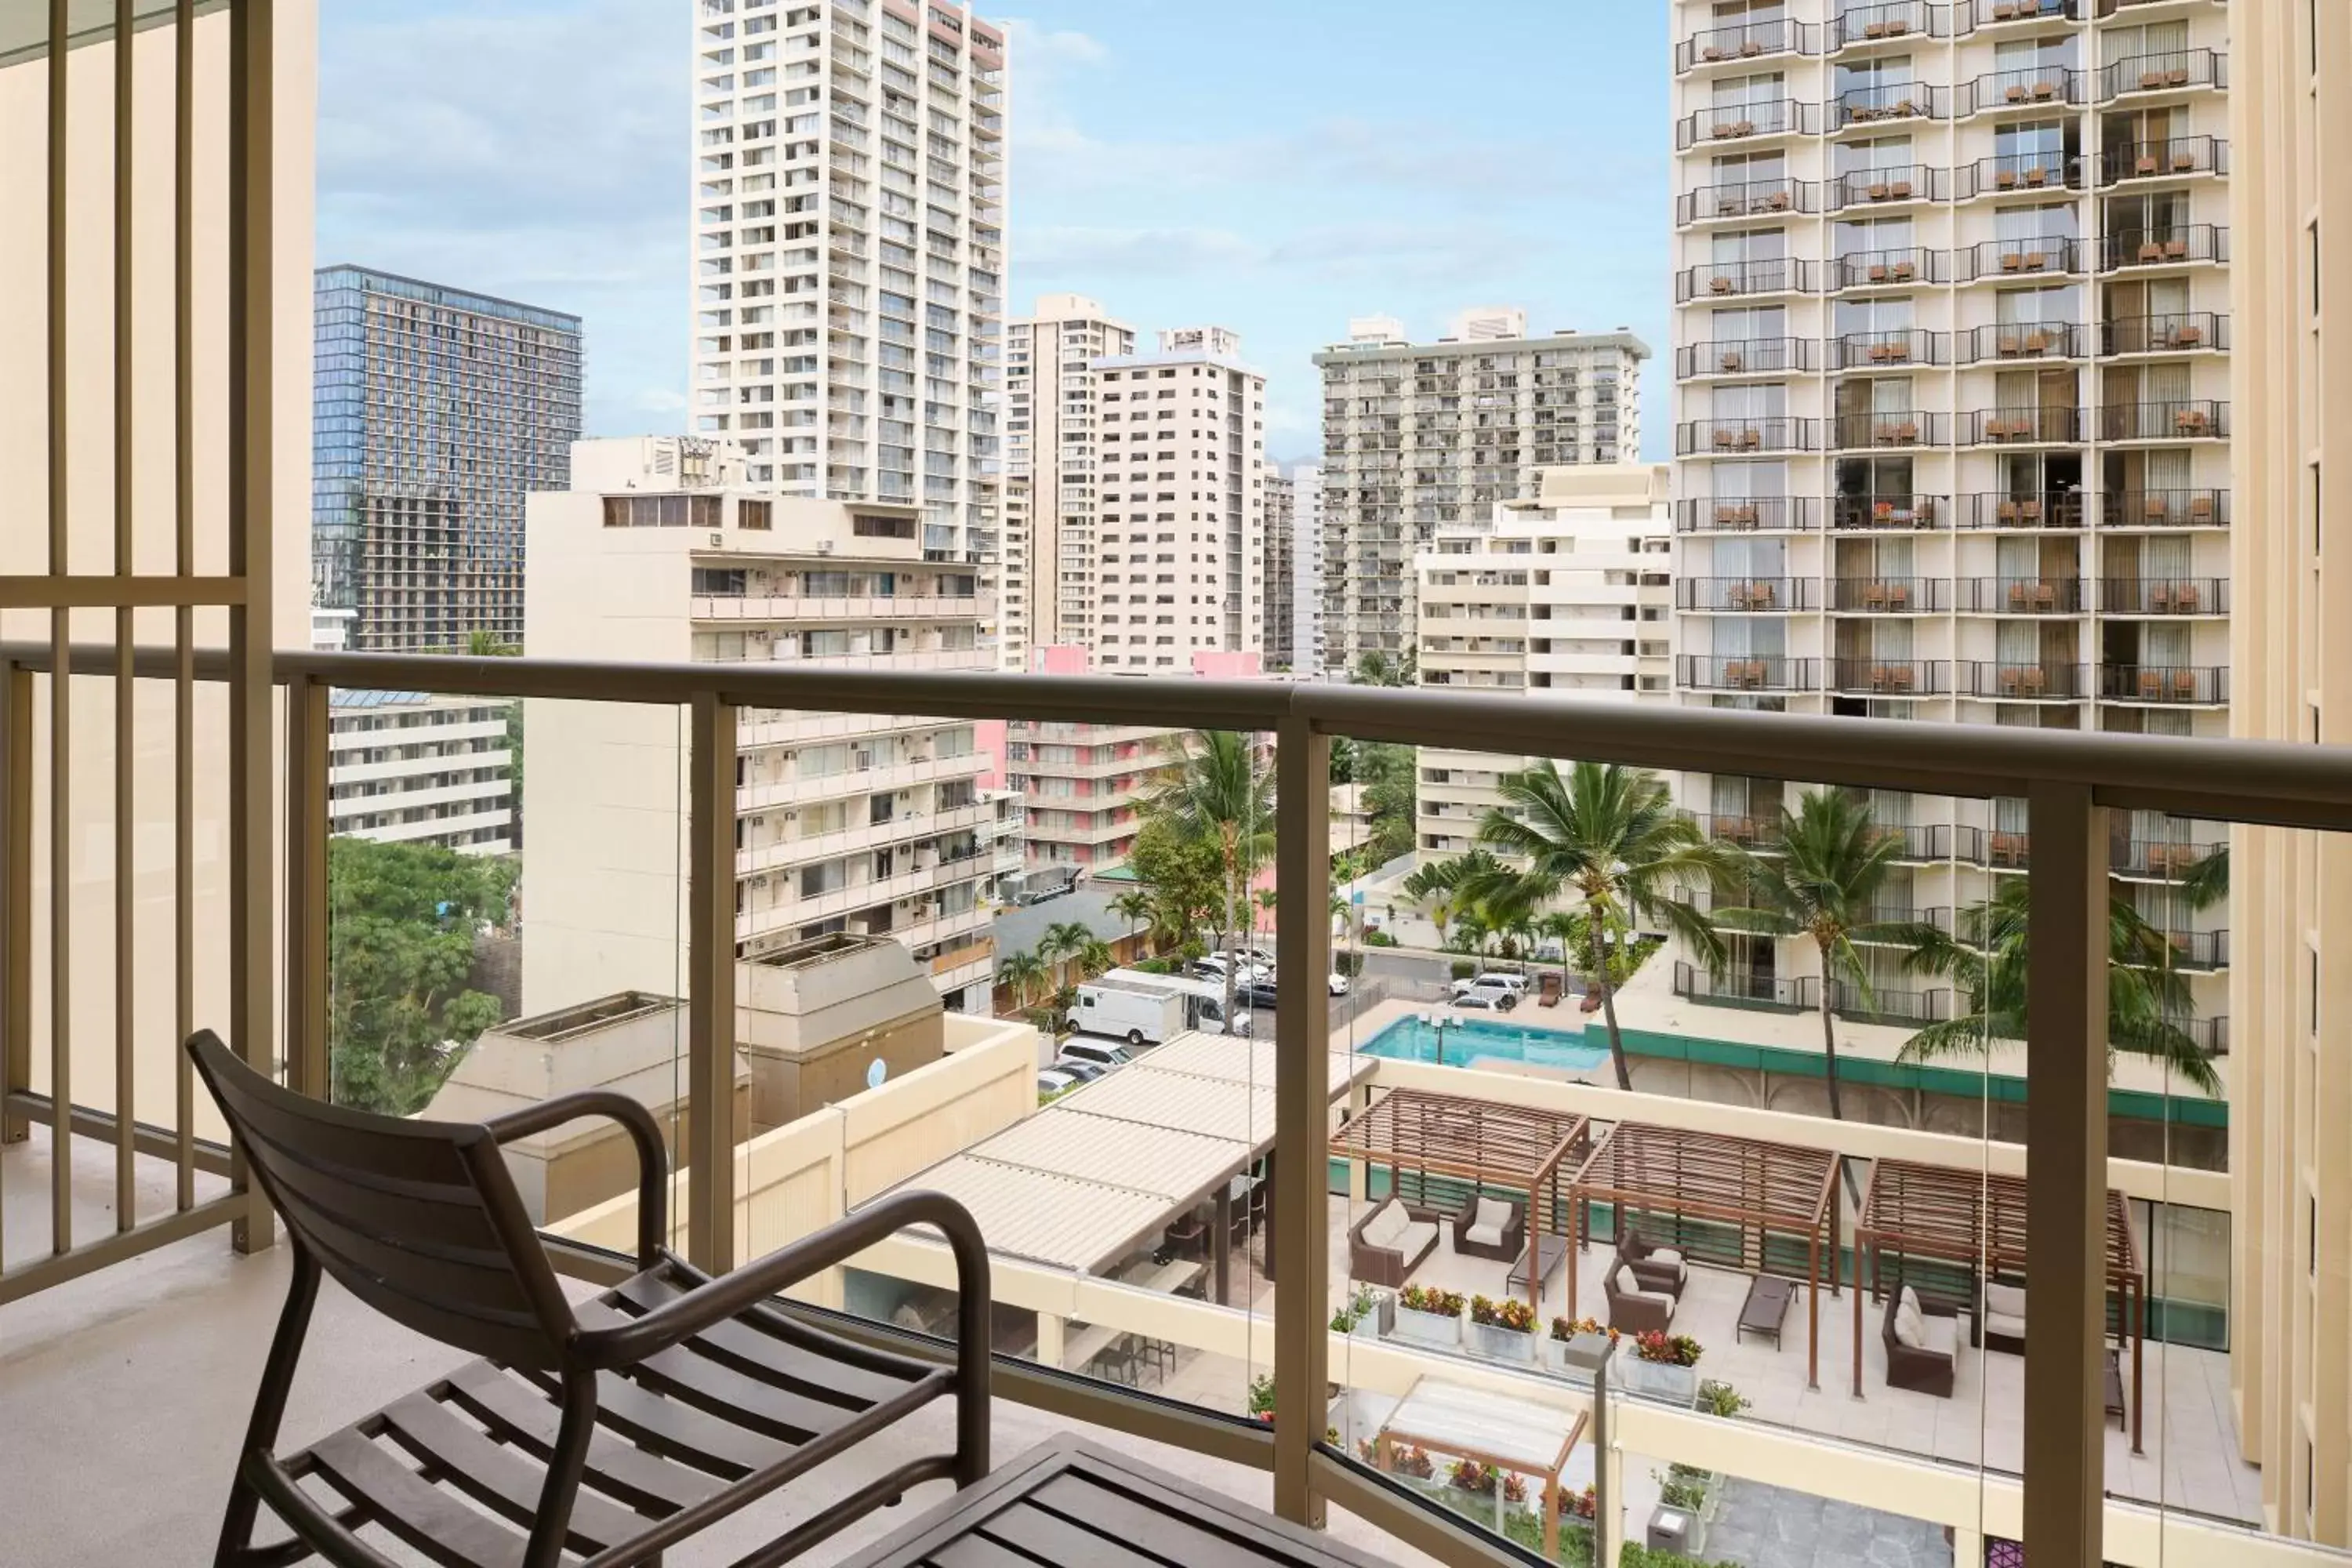 Property building, Pool View in Aston Waikiki Circle Hotel